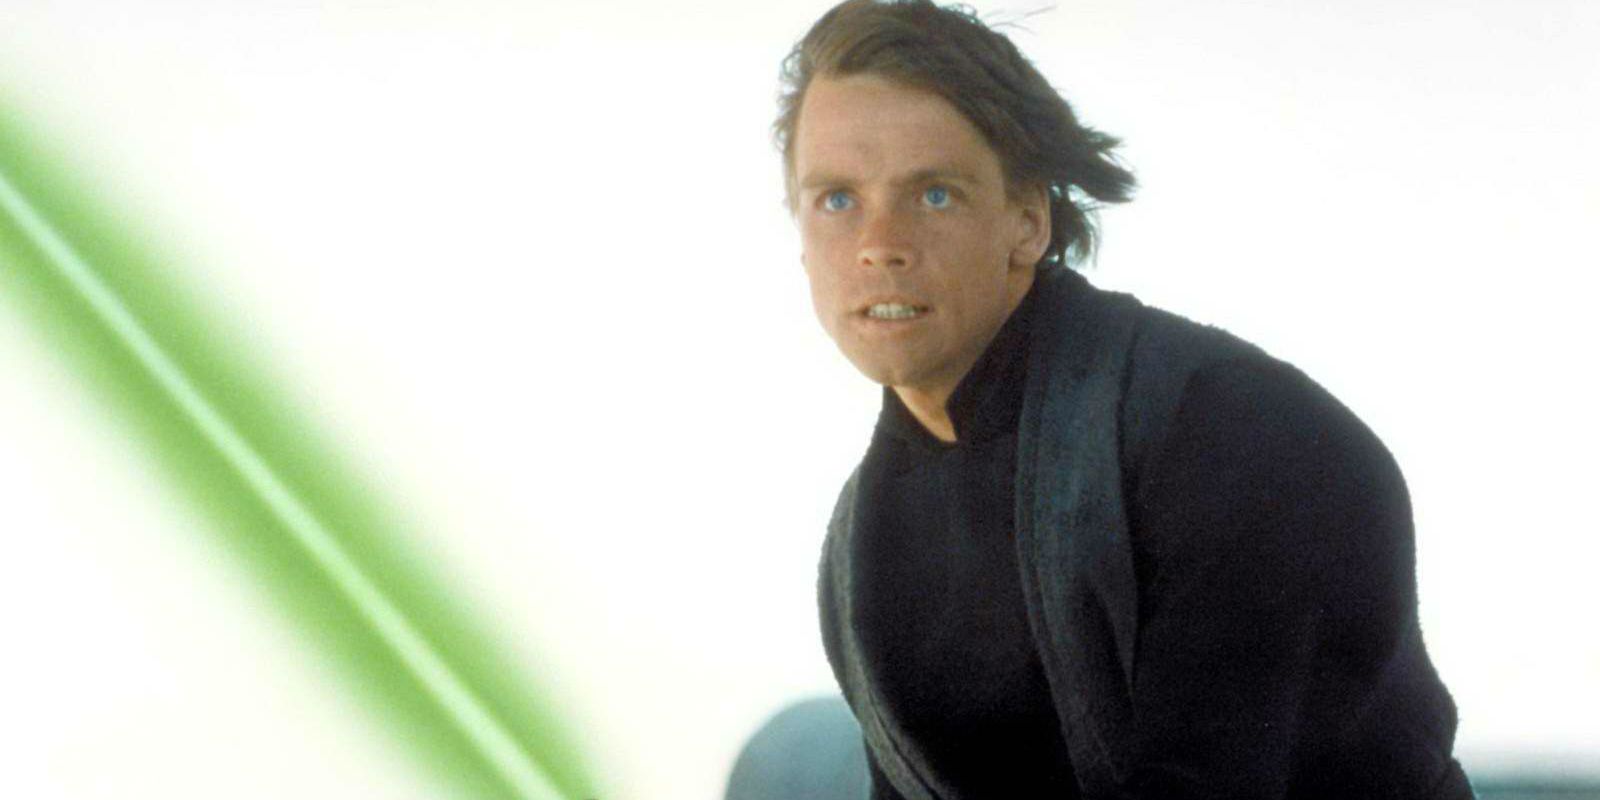 Luke Skywalker Wields His Green Lightsaber in Return of the Jedi